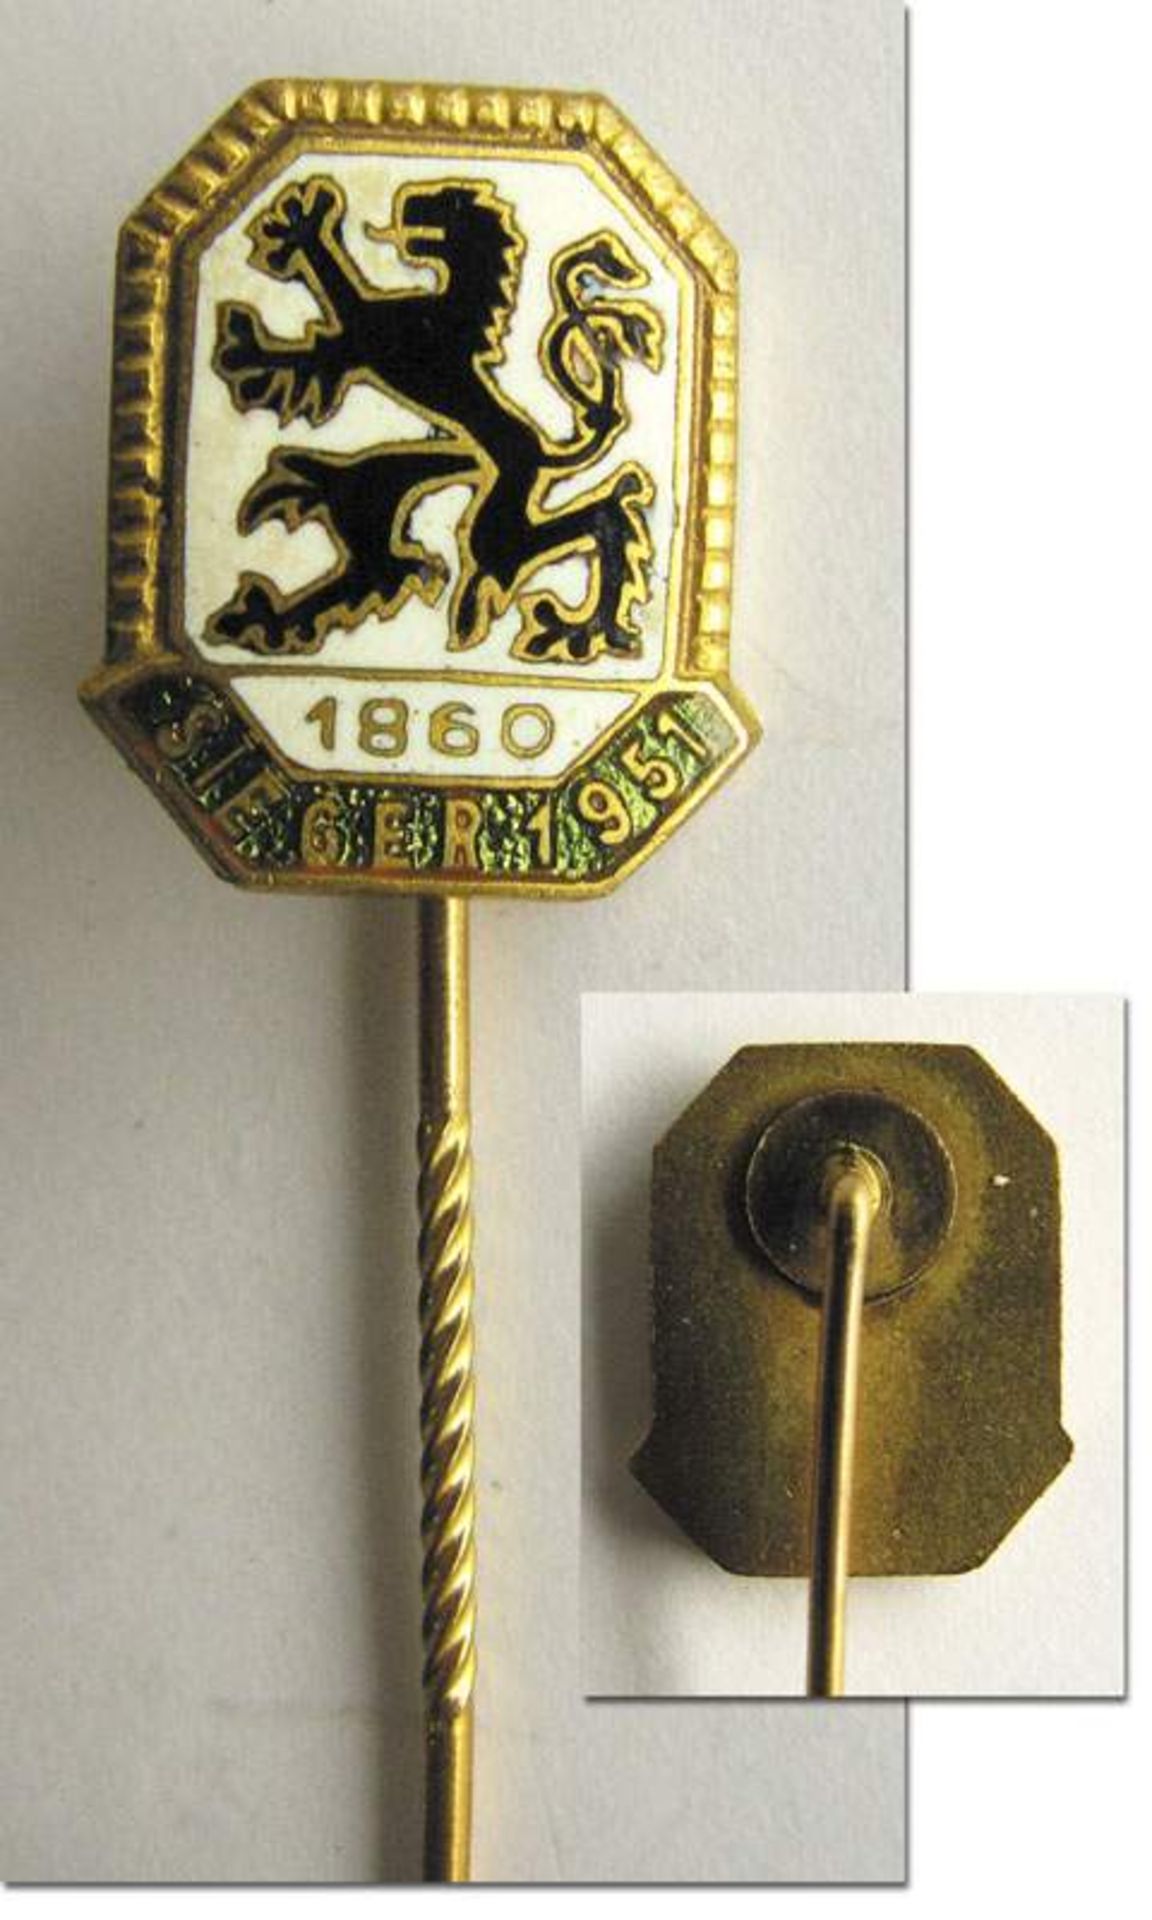 German Football pin 19511860 München -  München,1860 - Nadel - Vereinsnadel München1860 mit der